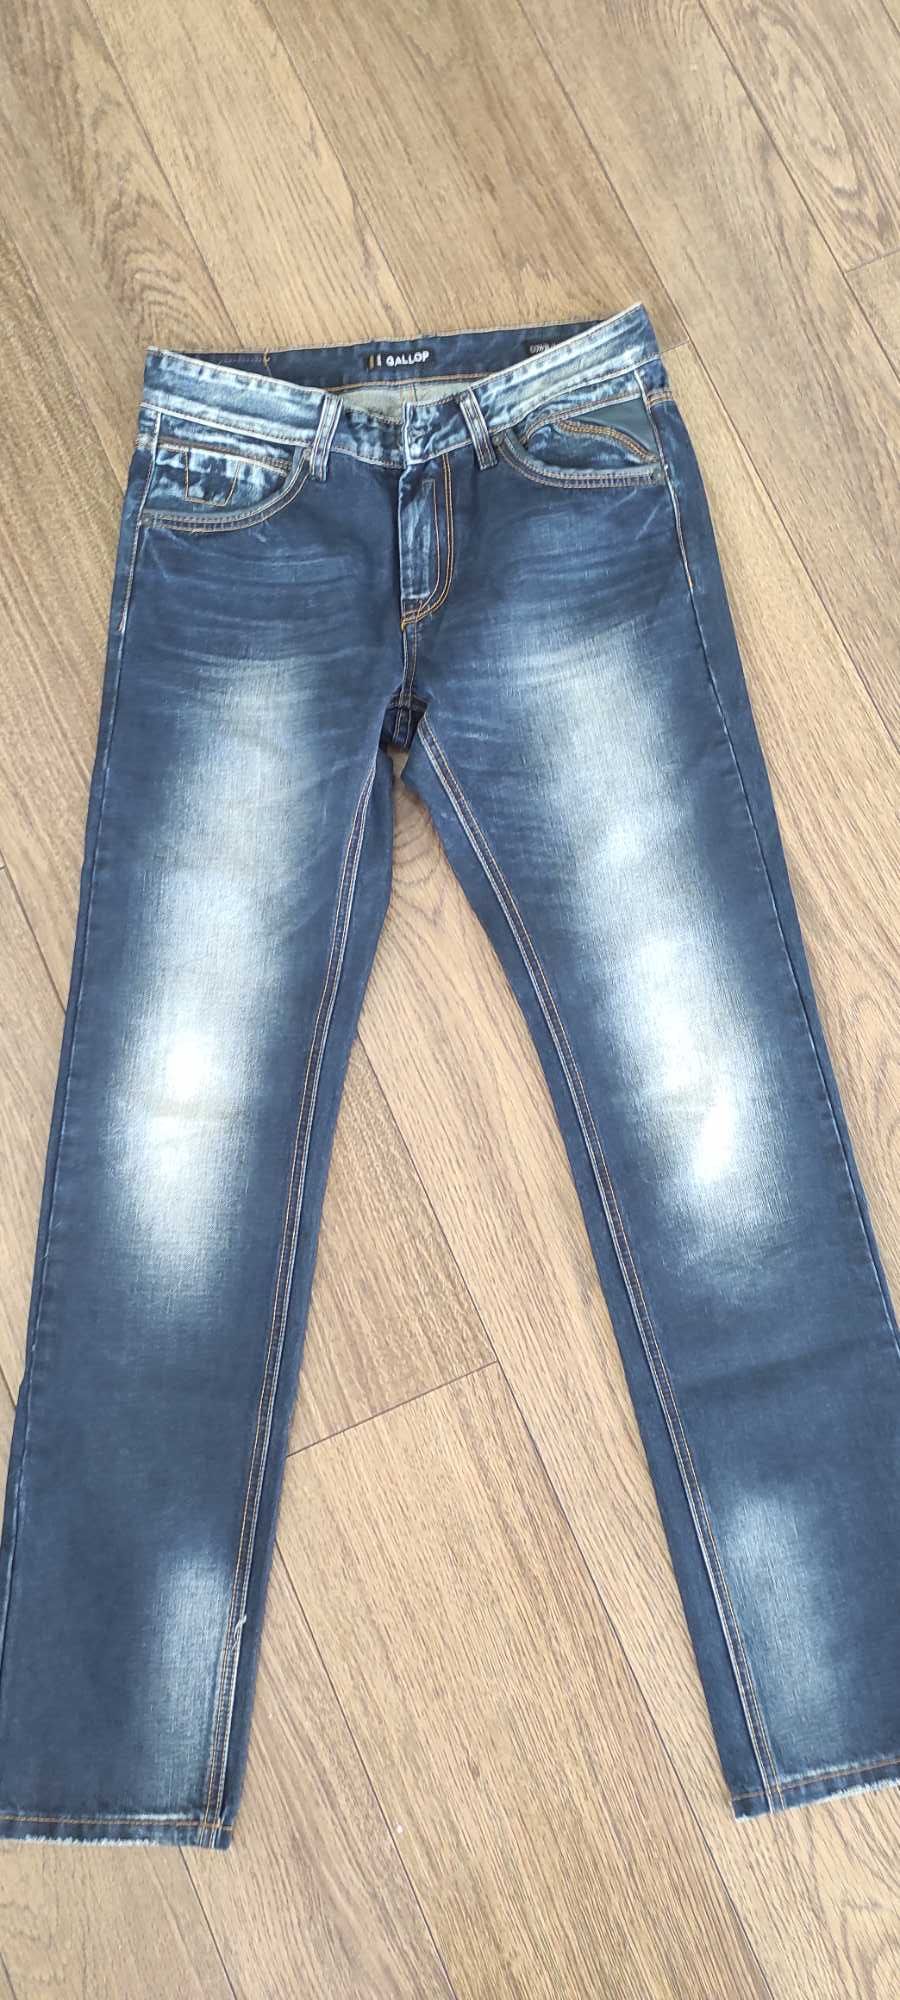 Spodnie męskie jeans rozmiar 30